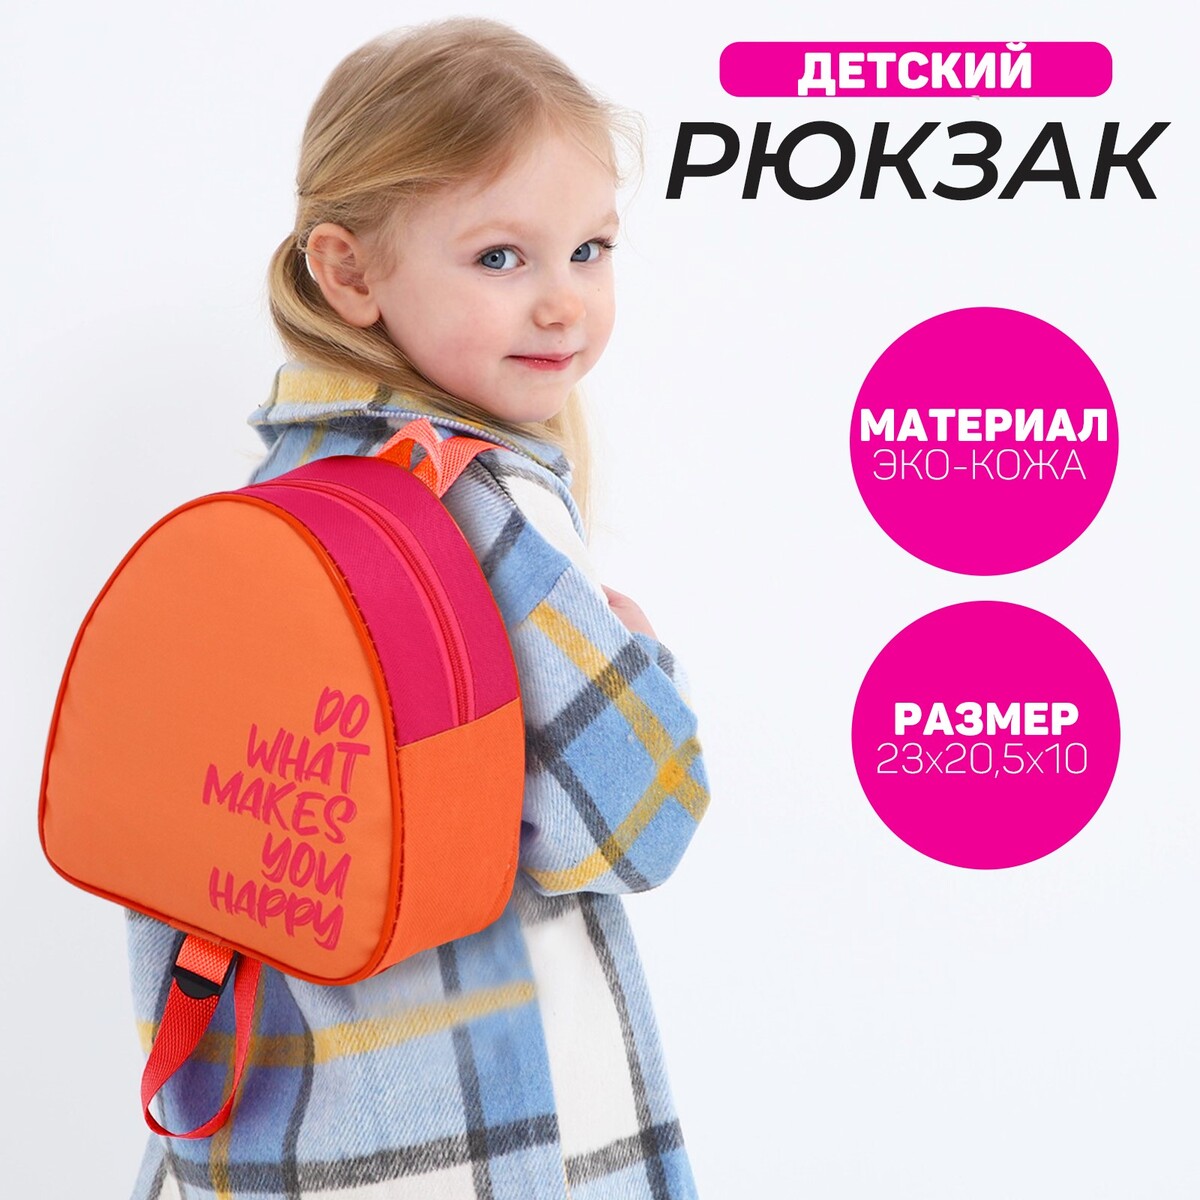 Рюкзак детский для девочки happy, 23х20,5 см, отдел на молнии